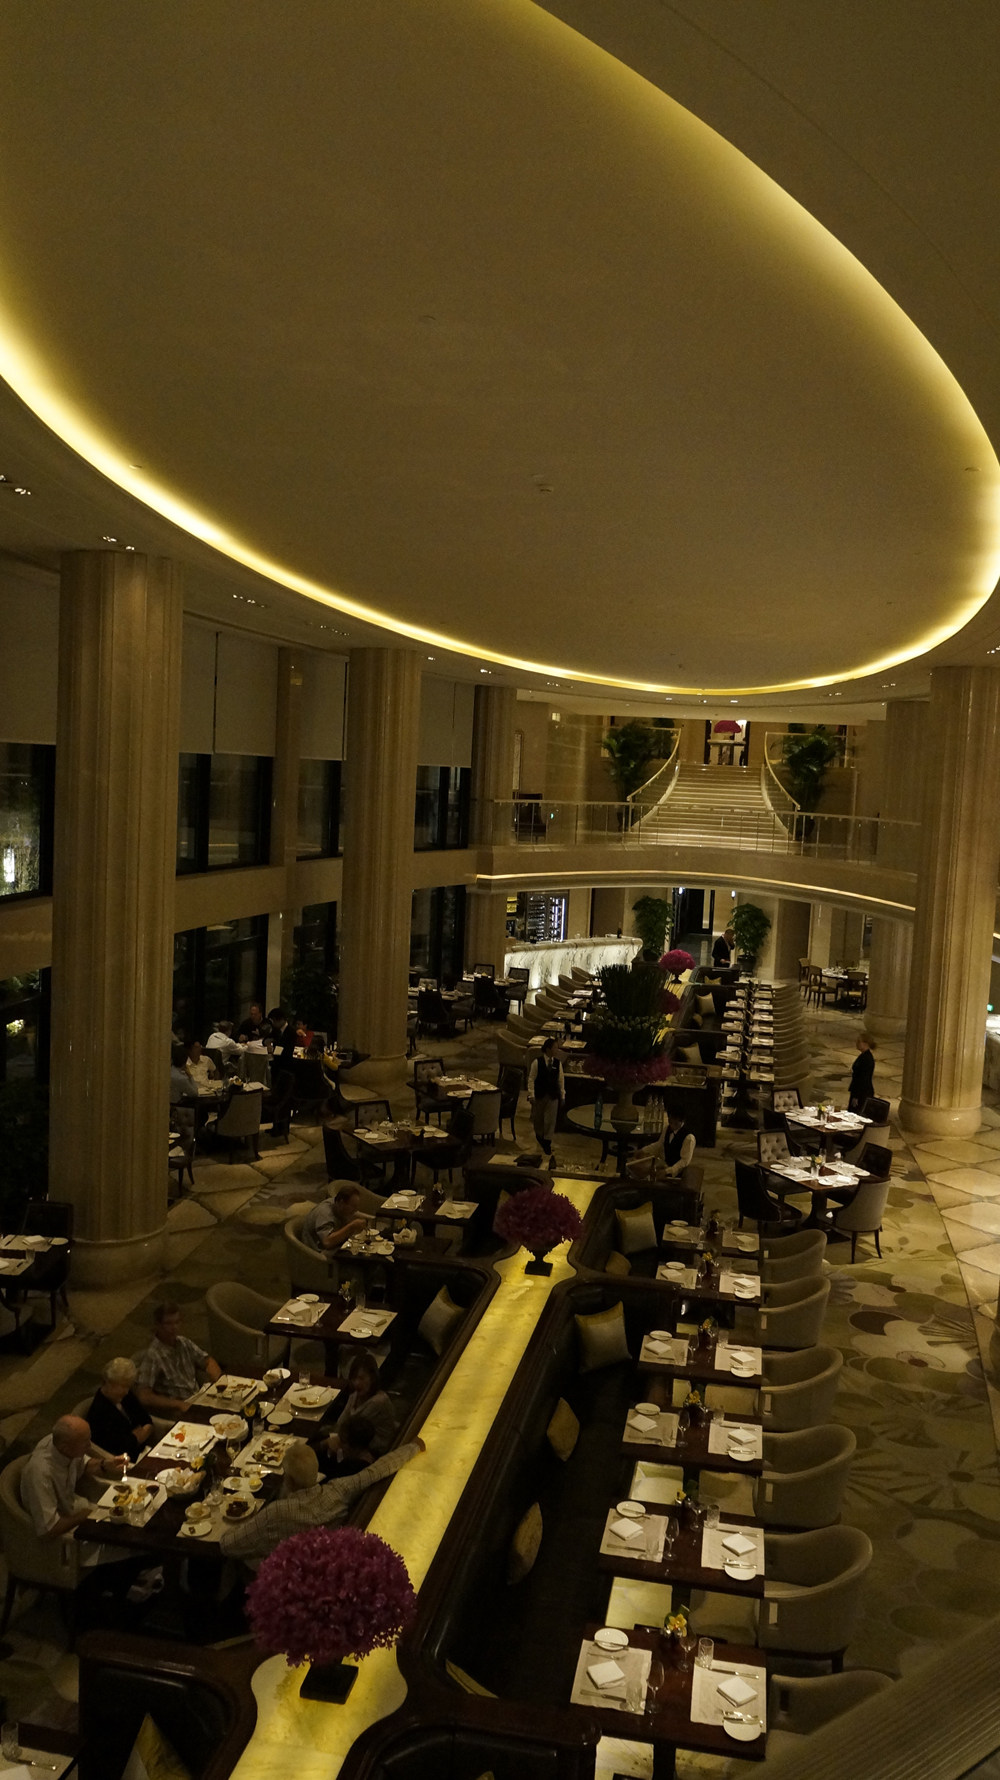 上海华尔道夫酒店(The Waldorf Astoria OnTheBund)(HBA)10.9第10页更新__DSC0270.JPG